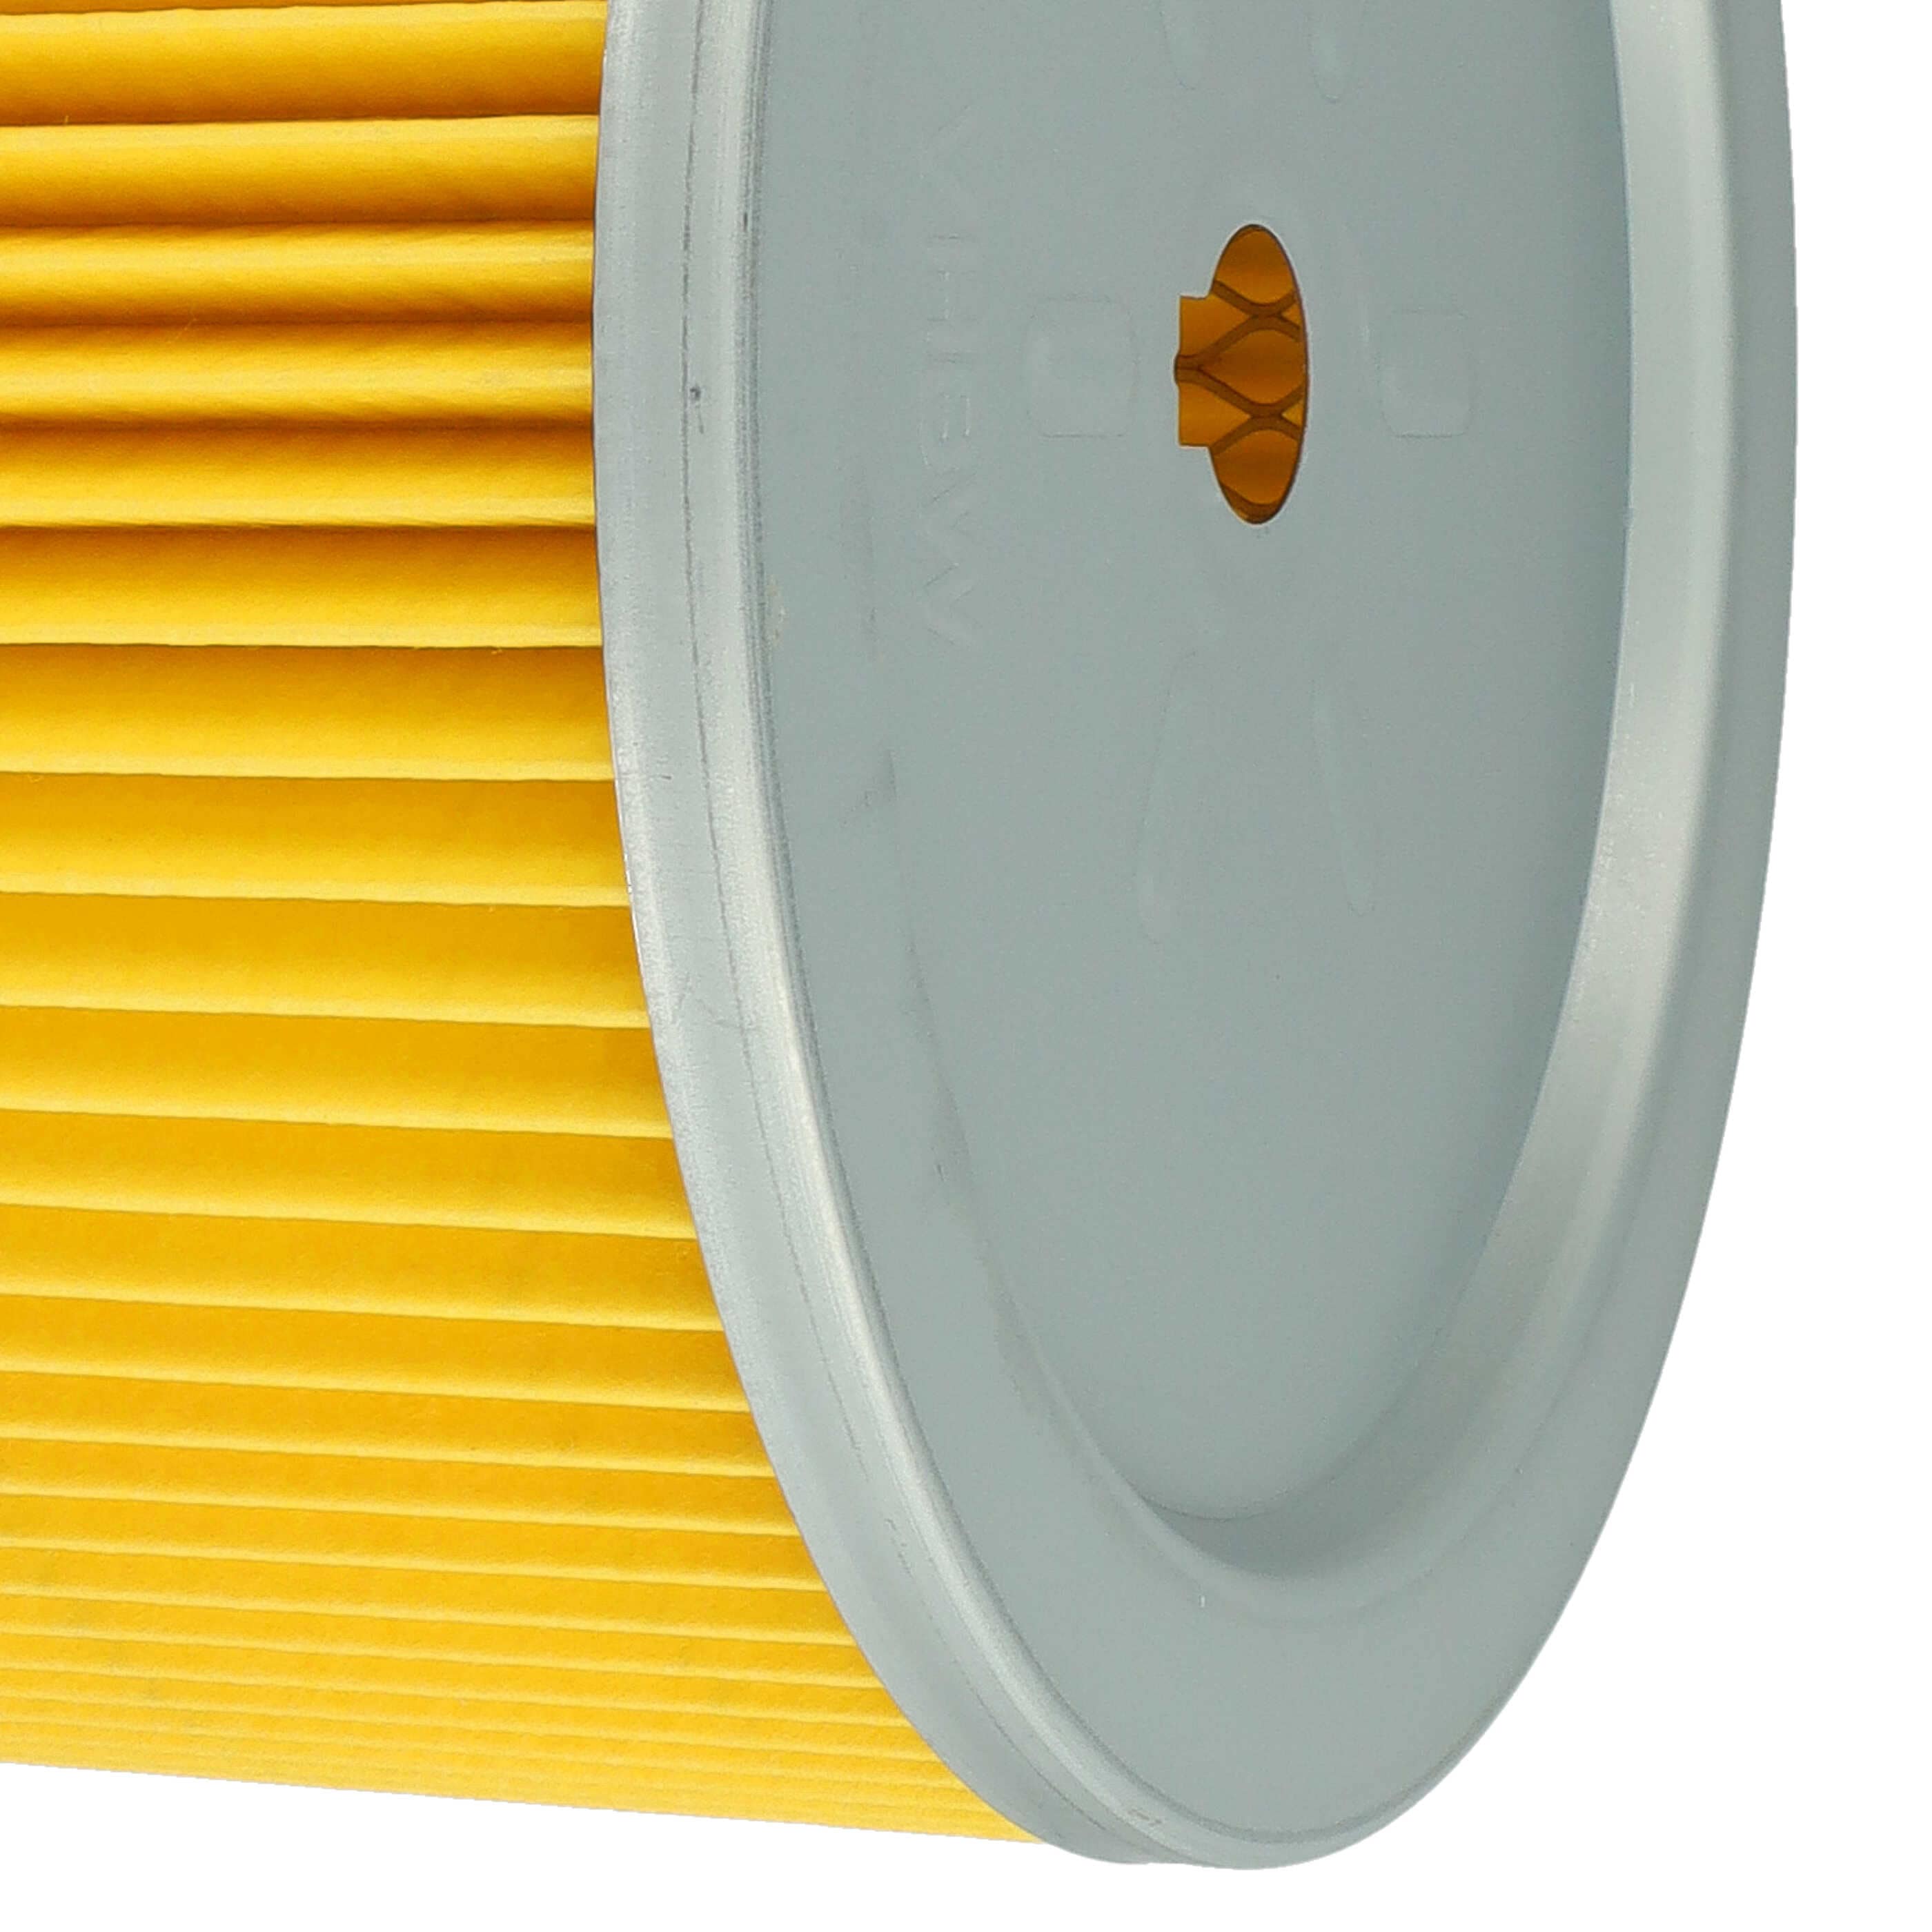 Filtro sostituisce Bosch 2607432001 per aspirapolvere - filtro a pieghe, nero / argento / giallo